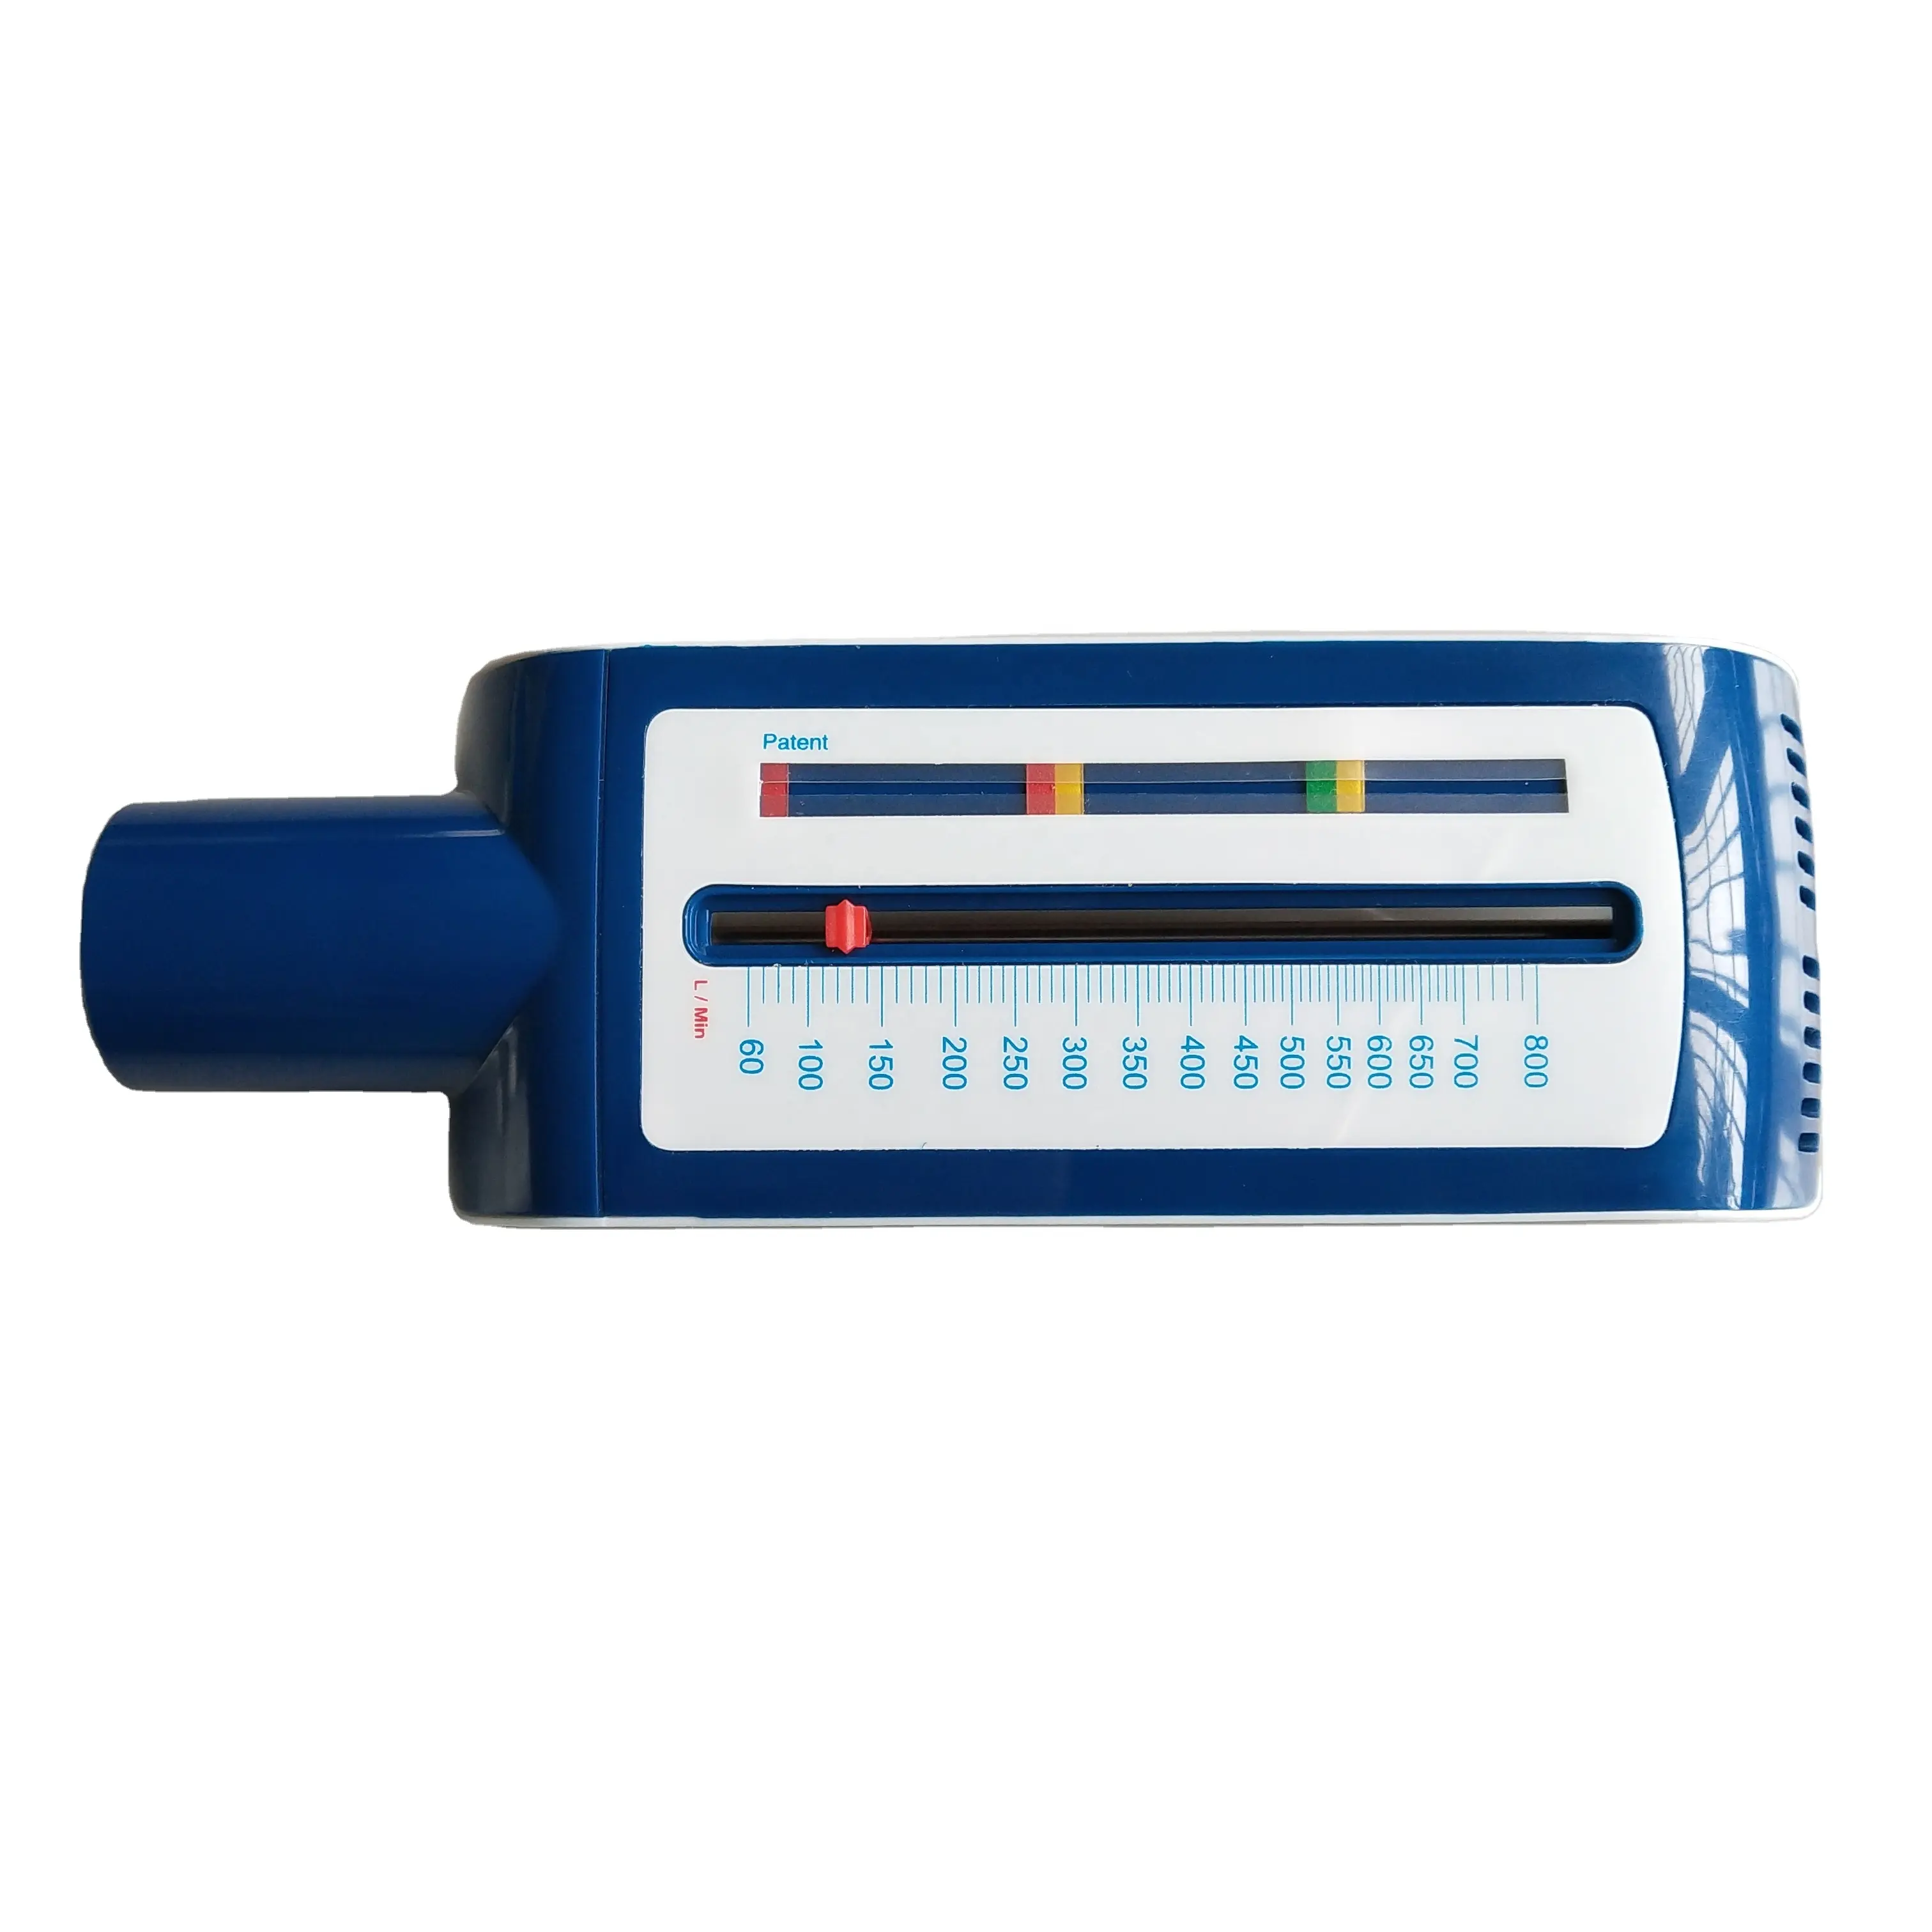 Nuovi prodotti cina forniture mediche misuratore di portata di picco in plastica design colore blu per adulti